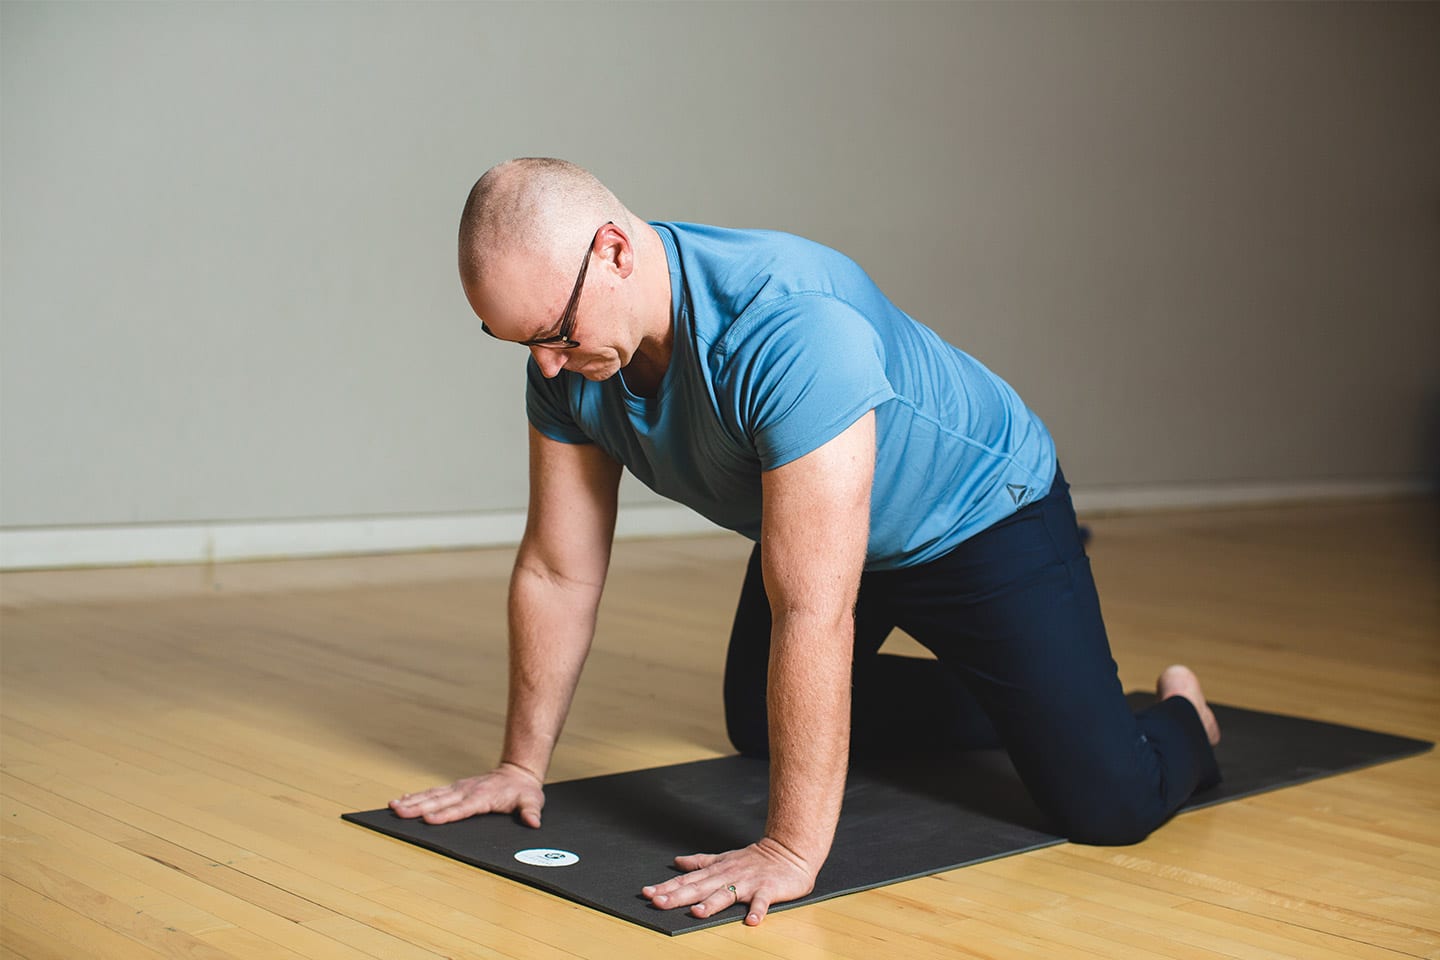 Jonathan ellis chattanooga yoga teacher preparing for child's pose